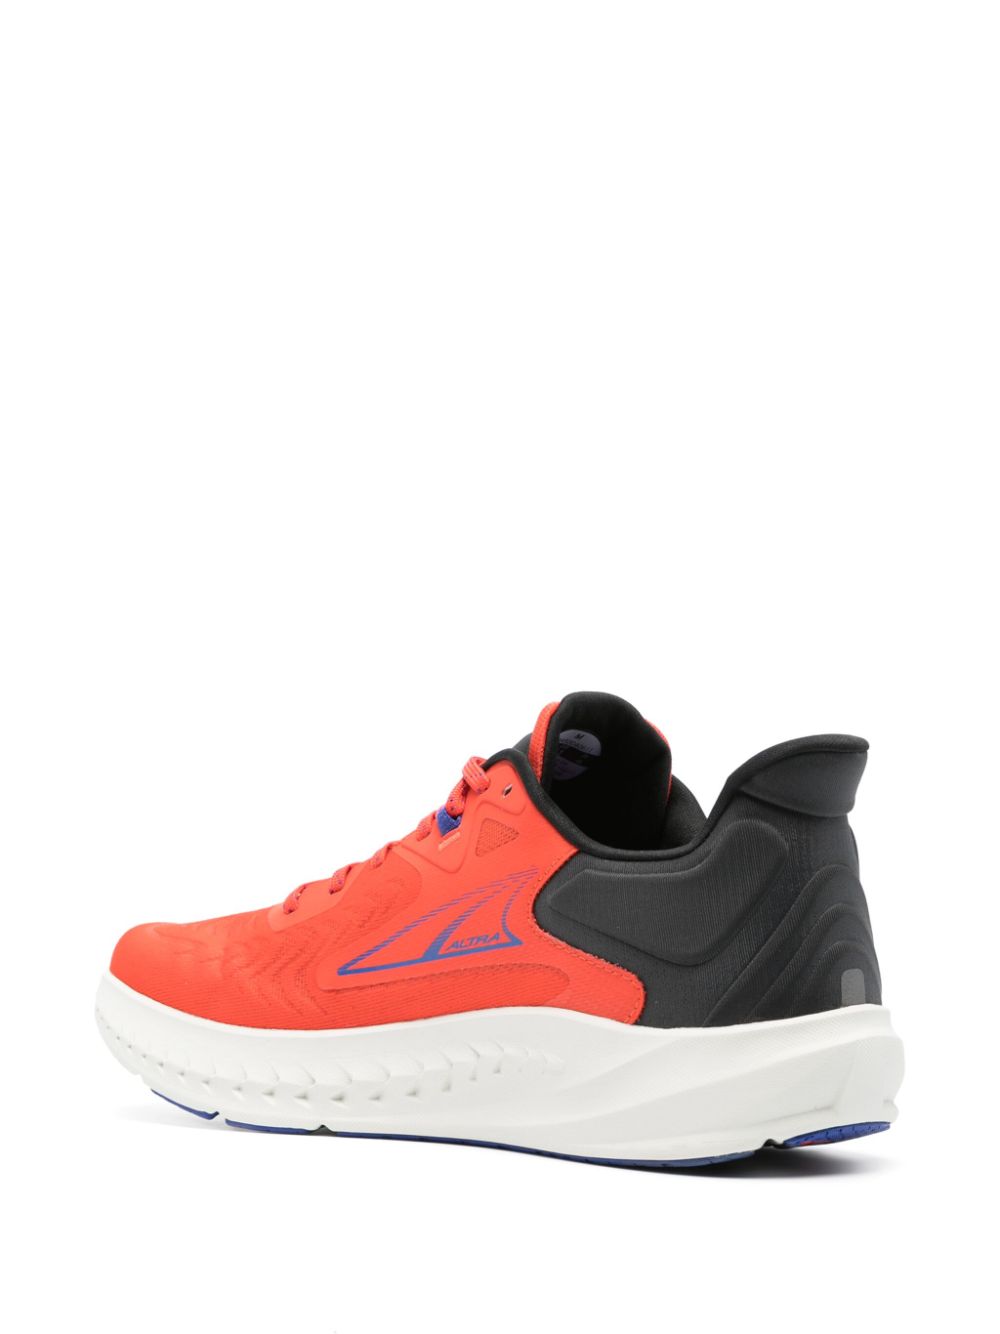 Sneakers Torin 7 nere/blu/arancioni